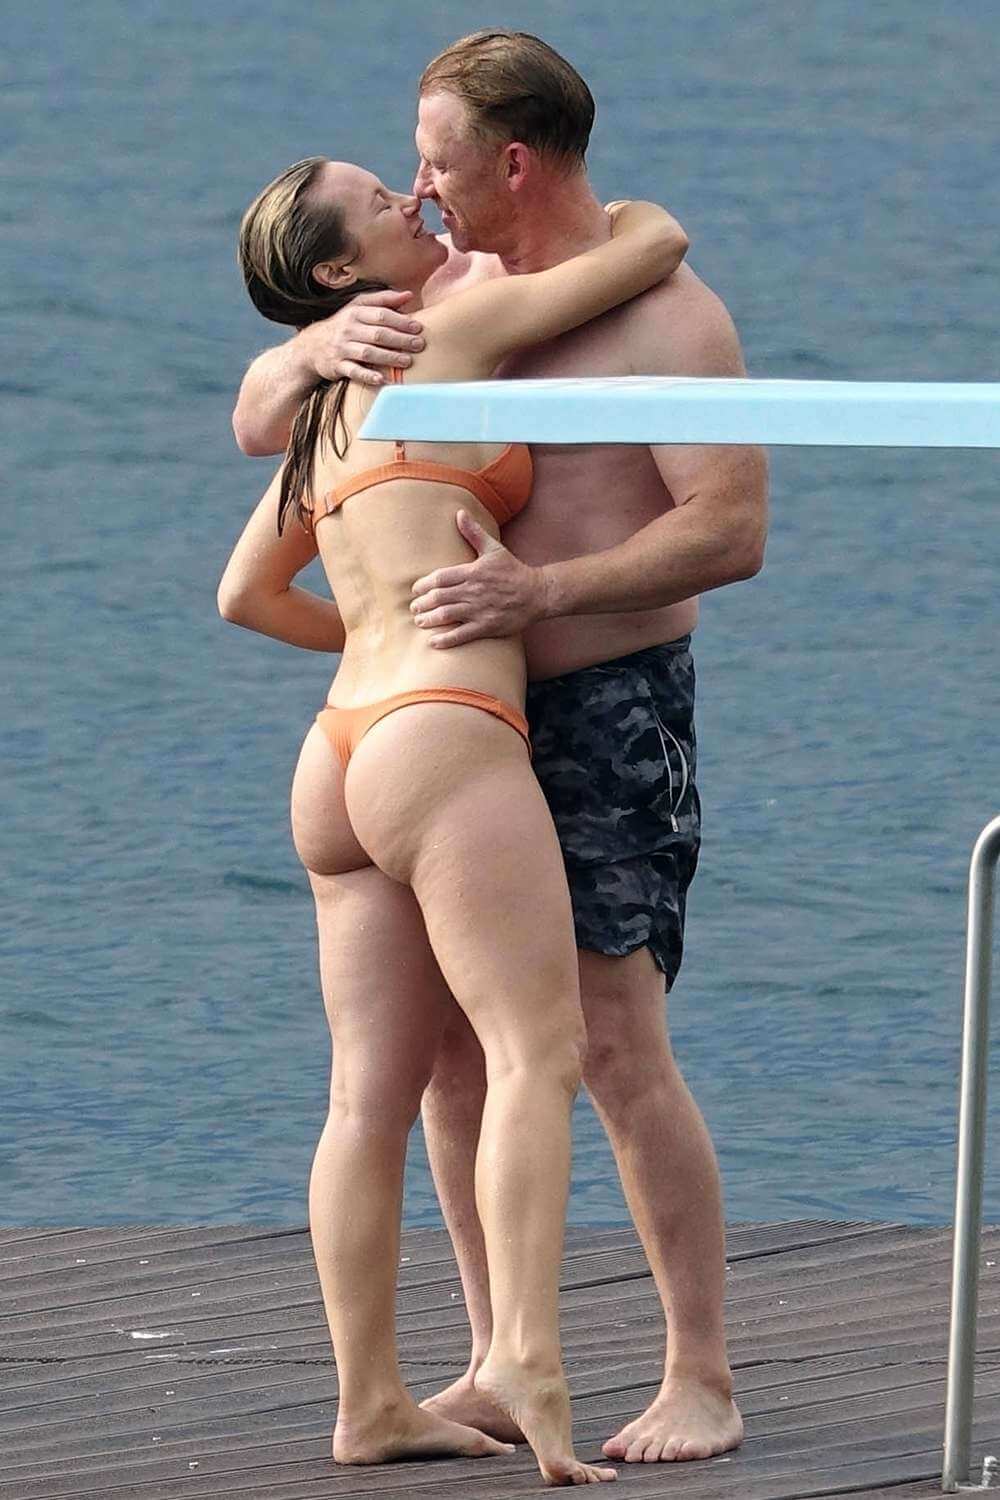 Звезда «Анатомии страсти» Кевин Маккидд и актриса «Станции 19» Даниэль Савре были замечены целующимися в Италии